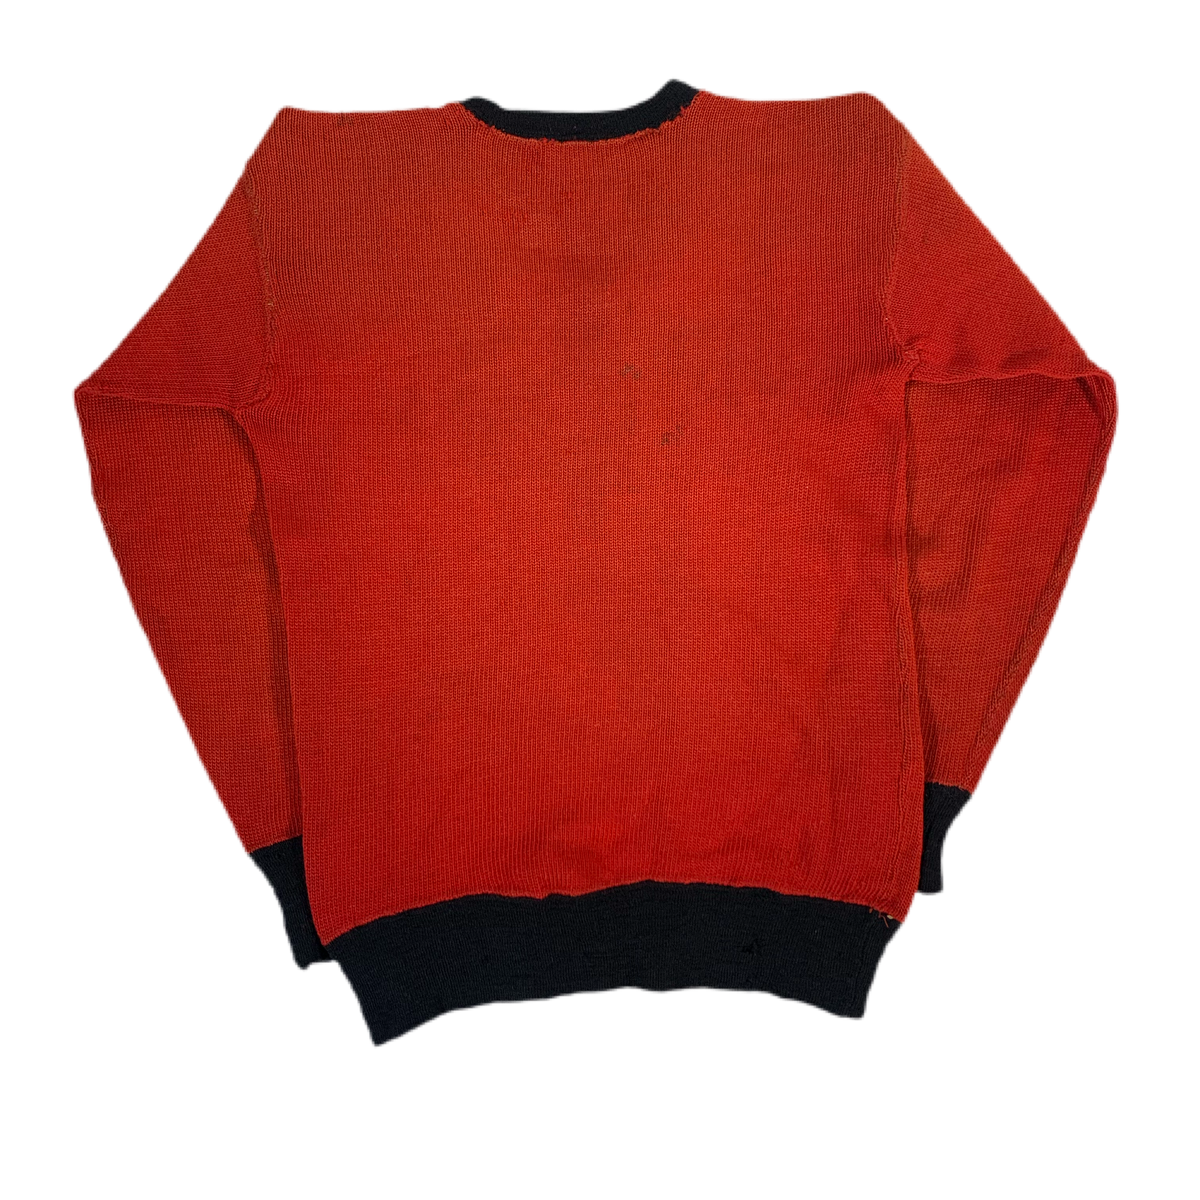 Vintage Princeton University “1930” Knit Sweater - jointcustodydc